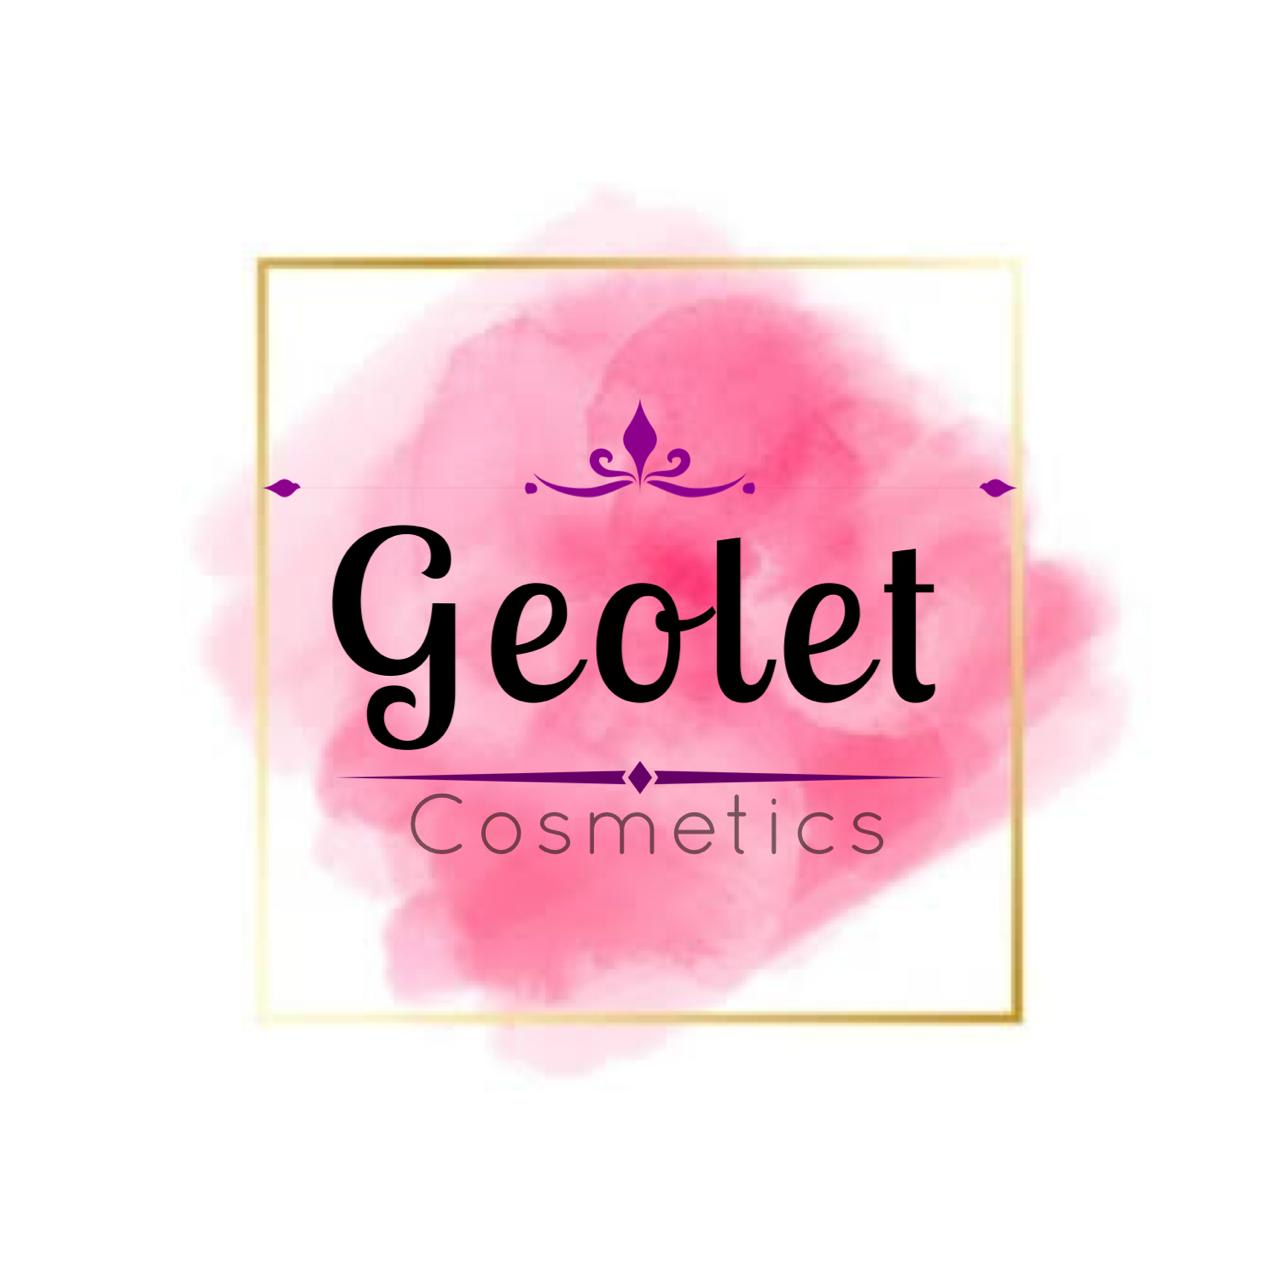 Geolet Cosmetics